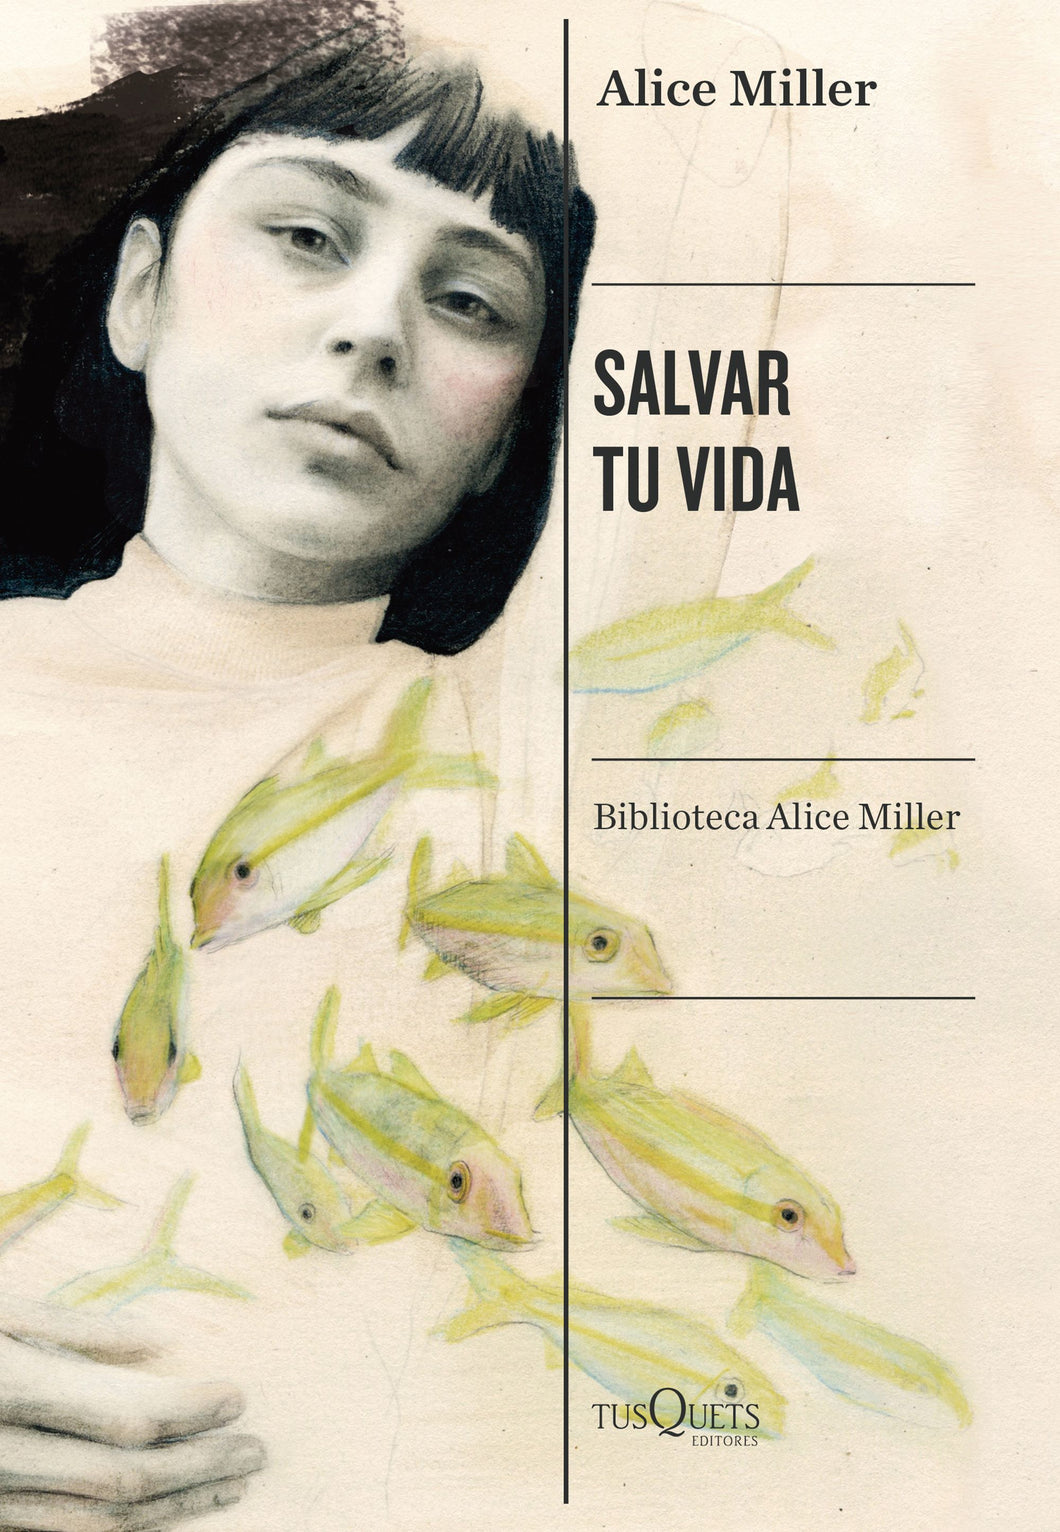 SALVAR TU VIDA - Alice Miller